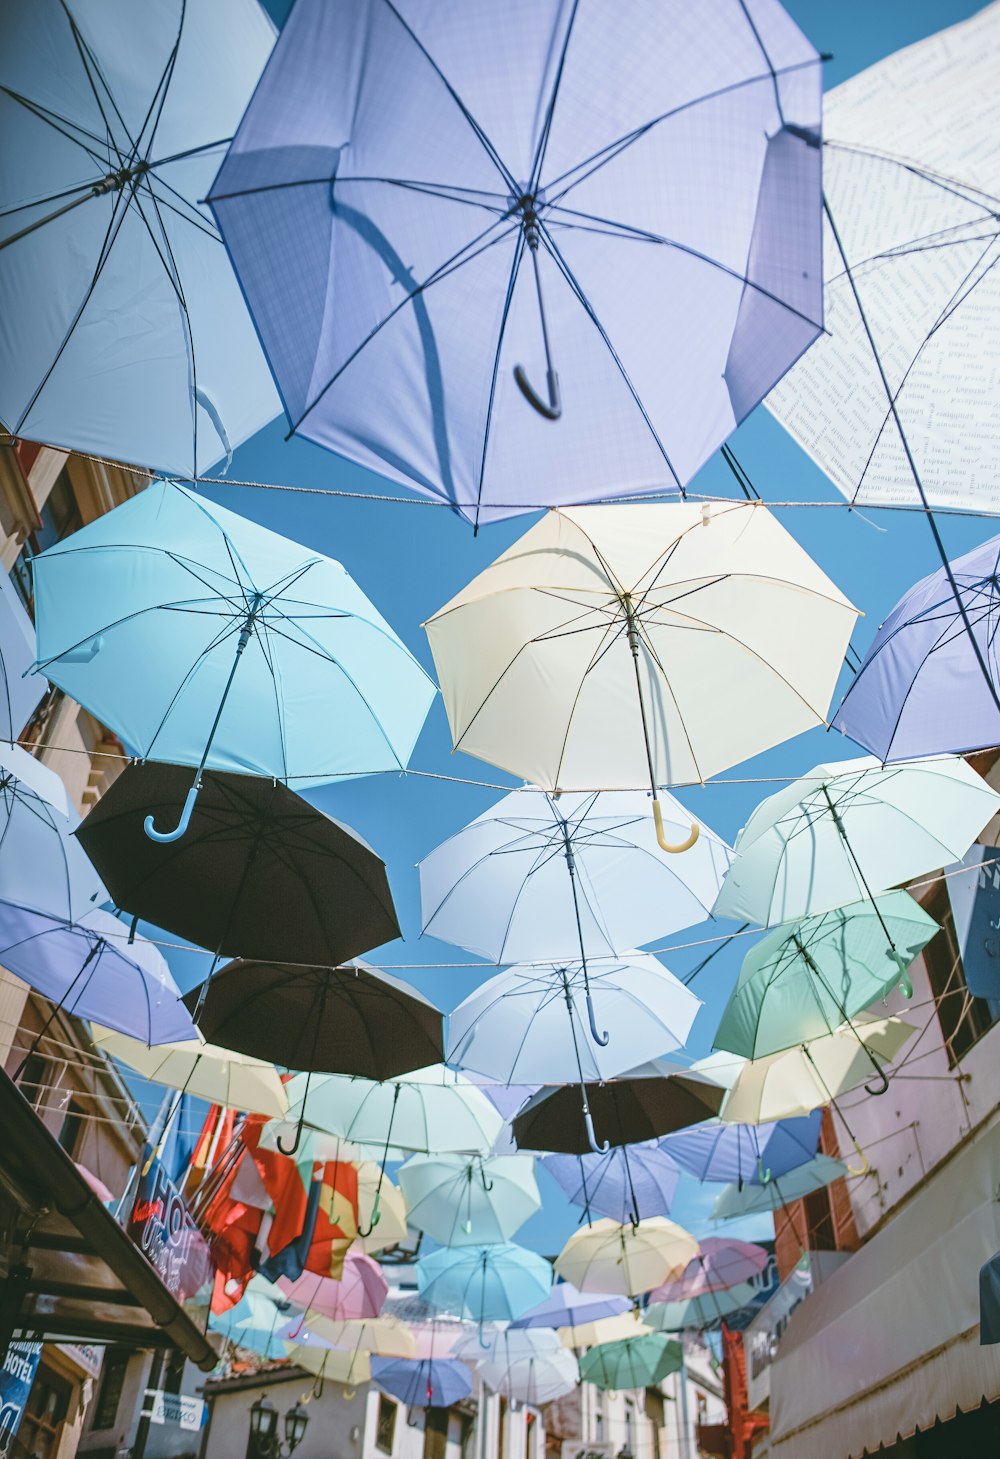 guarda-chuvas de cores variadas pendurados em fios sob o céu azul durante o dia